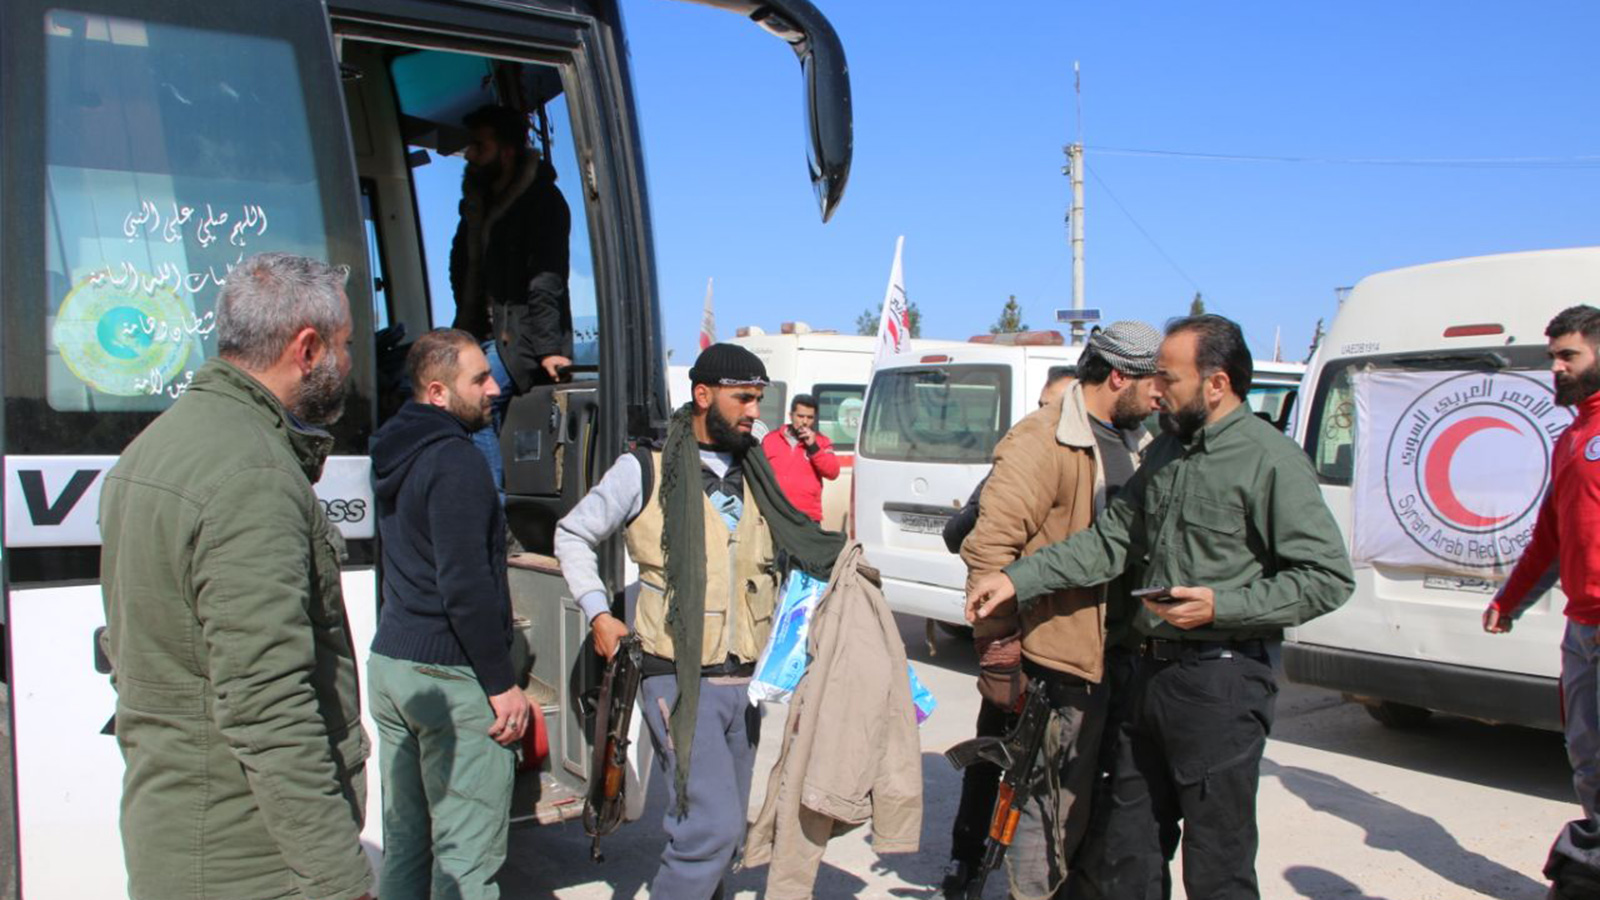 ‪لحظة وصول مقاتلي المعارضة إلى ريف حلب‬ لحظة وصول مقاتلي المعارضة إلى ريف حلب (الجزيرة)